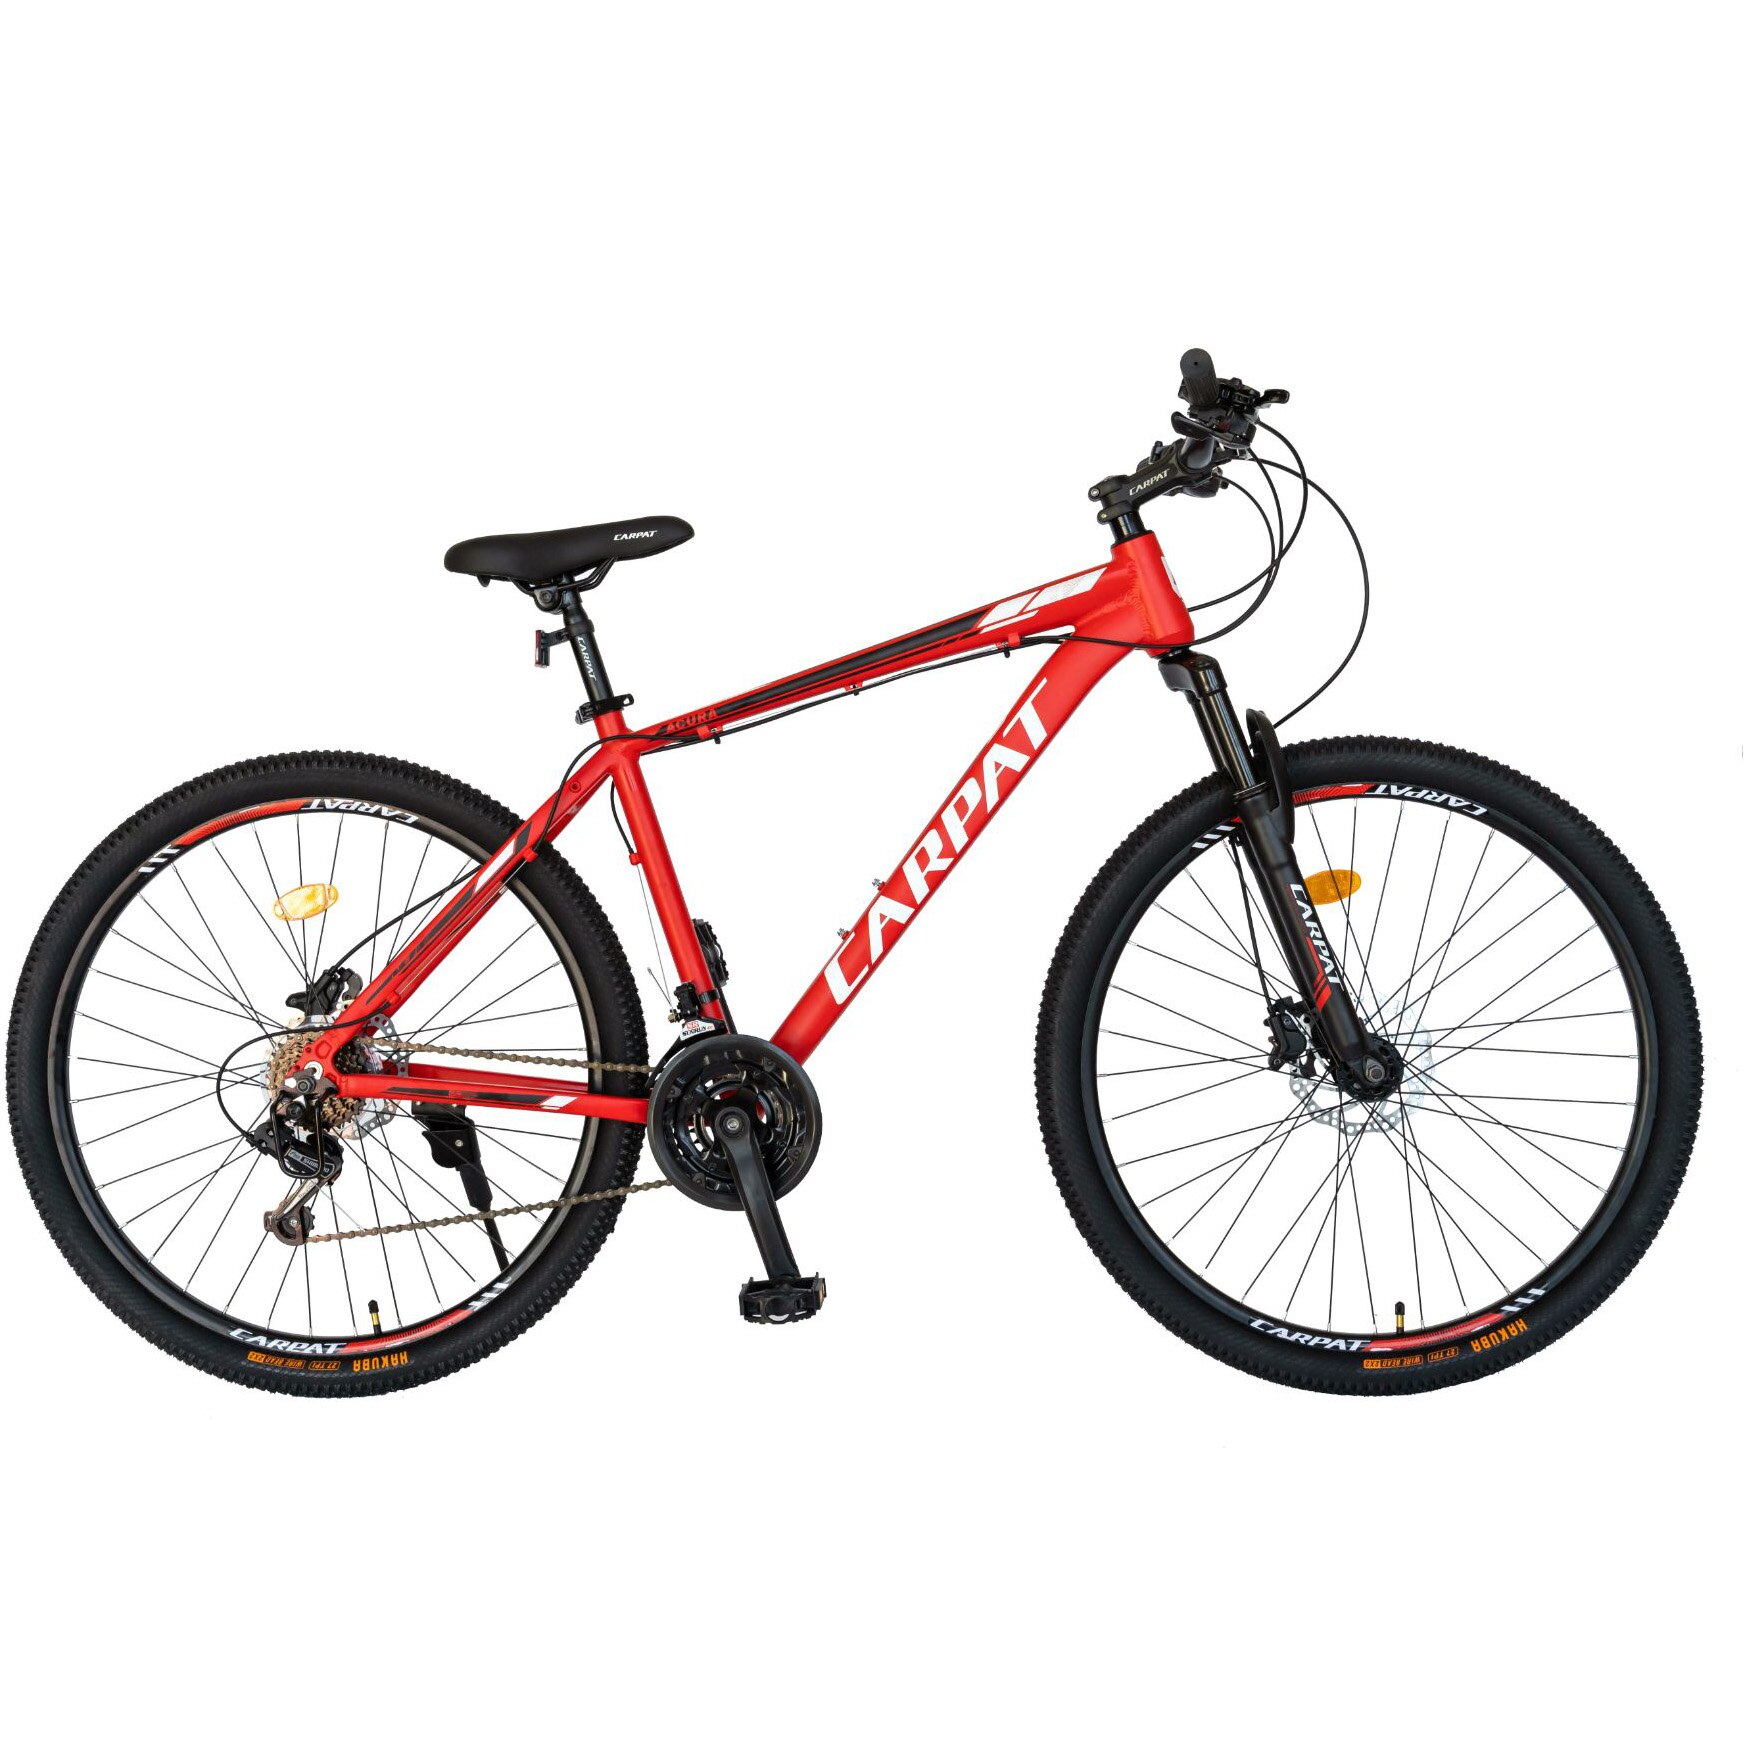 Fotografie Bicicleta MTB Carpat Acura C2799H, 27.5 inch, 21 viteze, cadru aluminiu, frane hidraulice, rosu/negru/alb